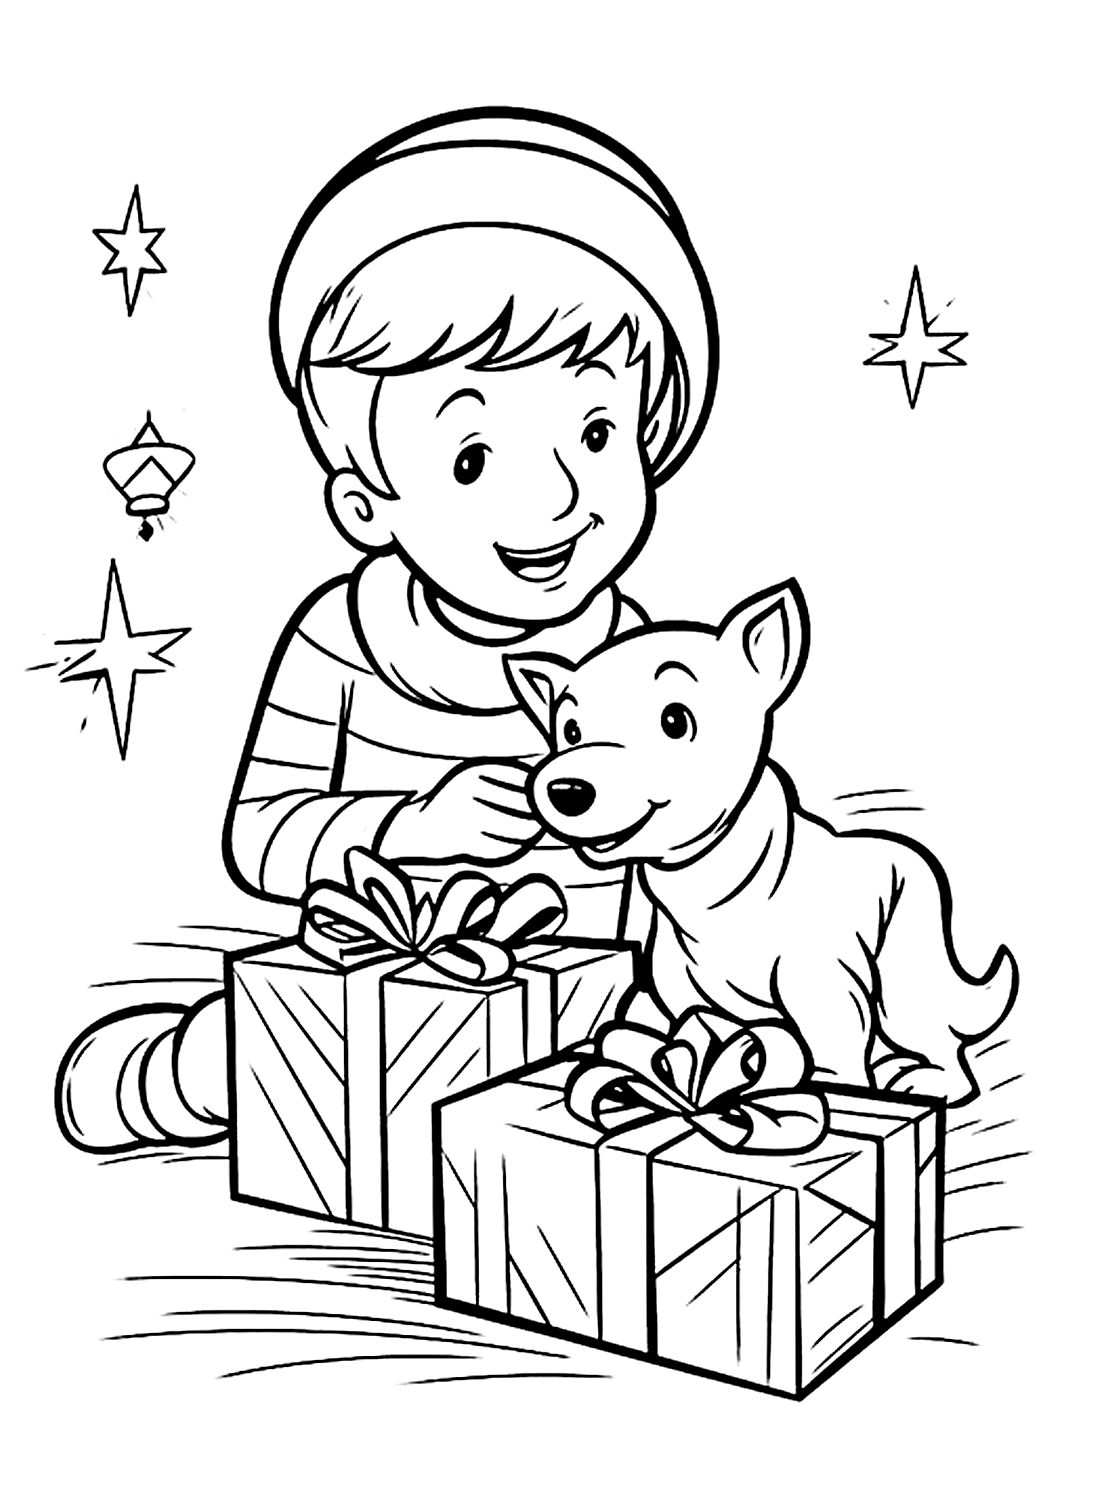 Цветное изображение мальчика и щенка